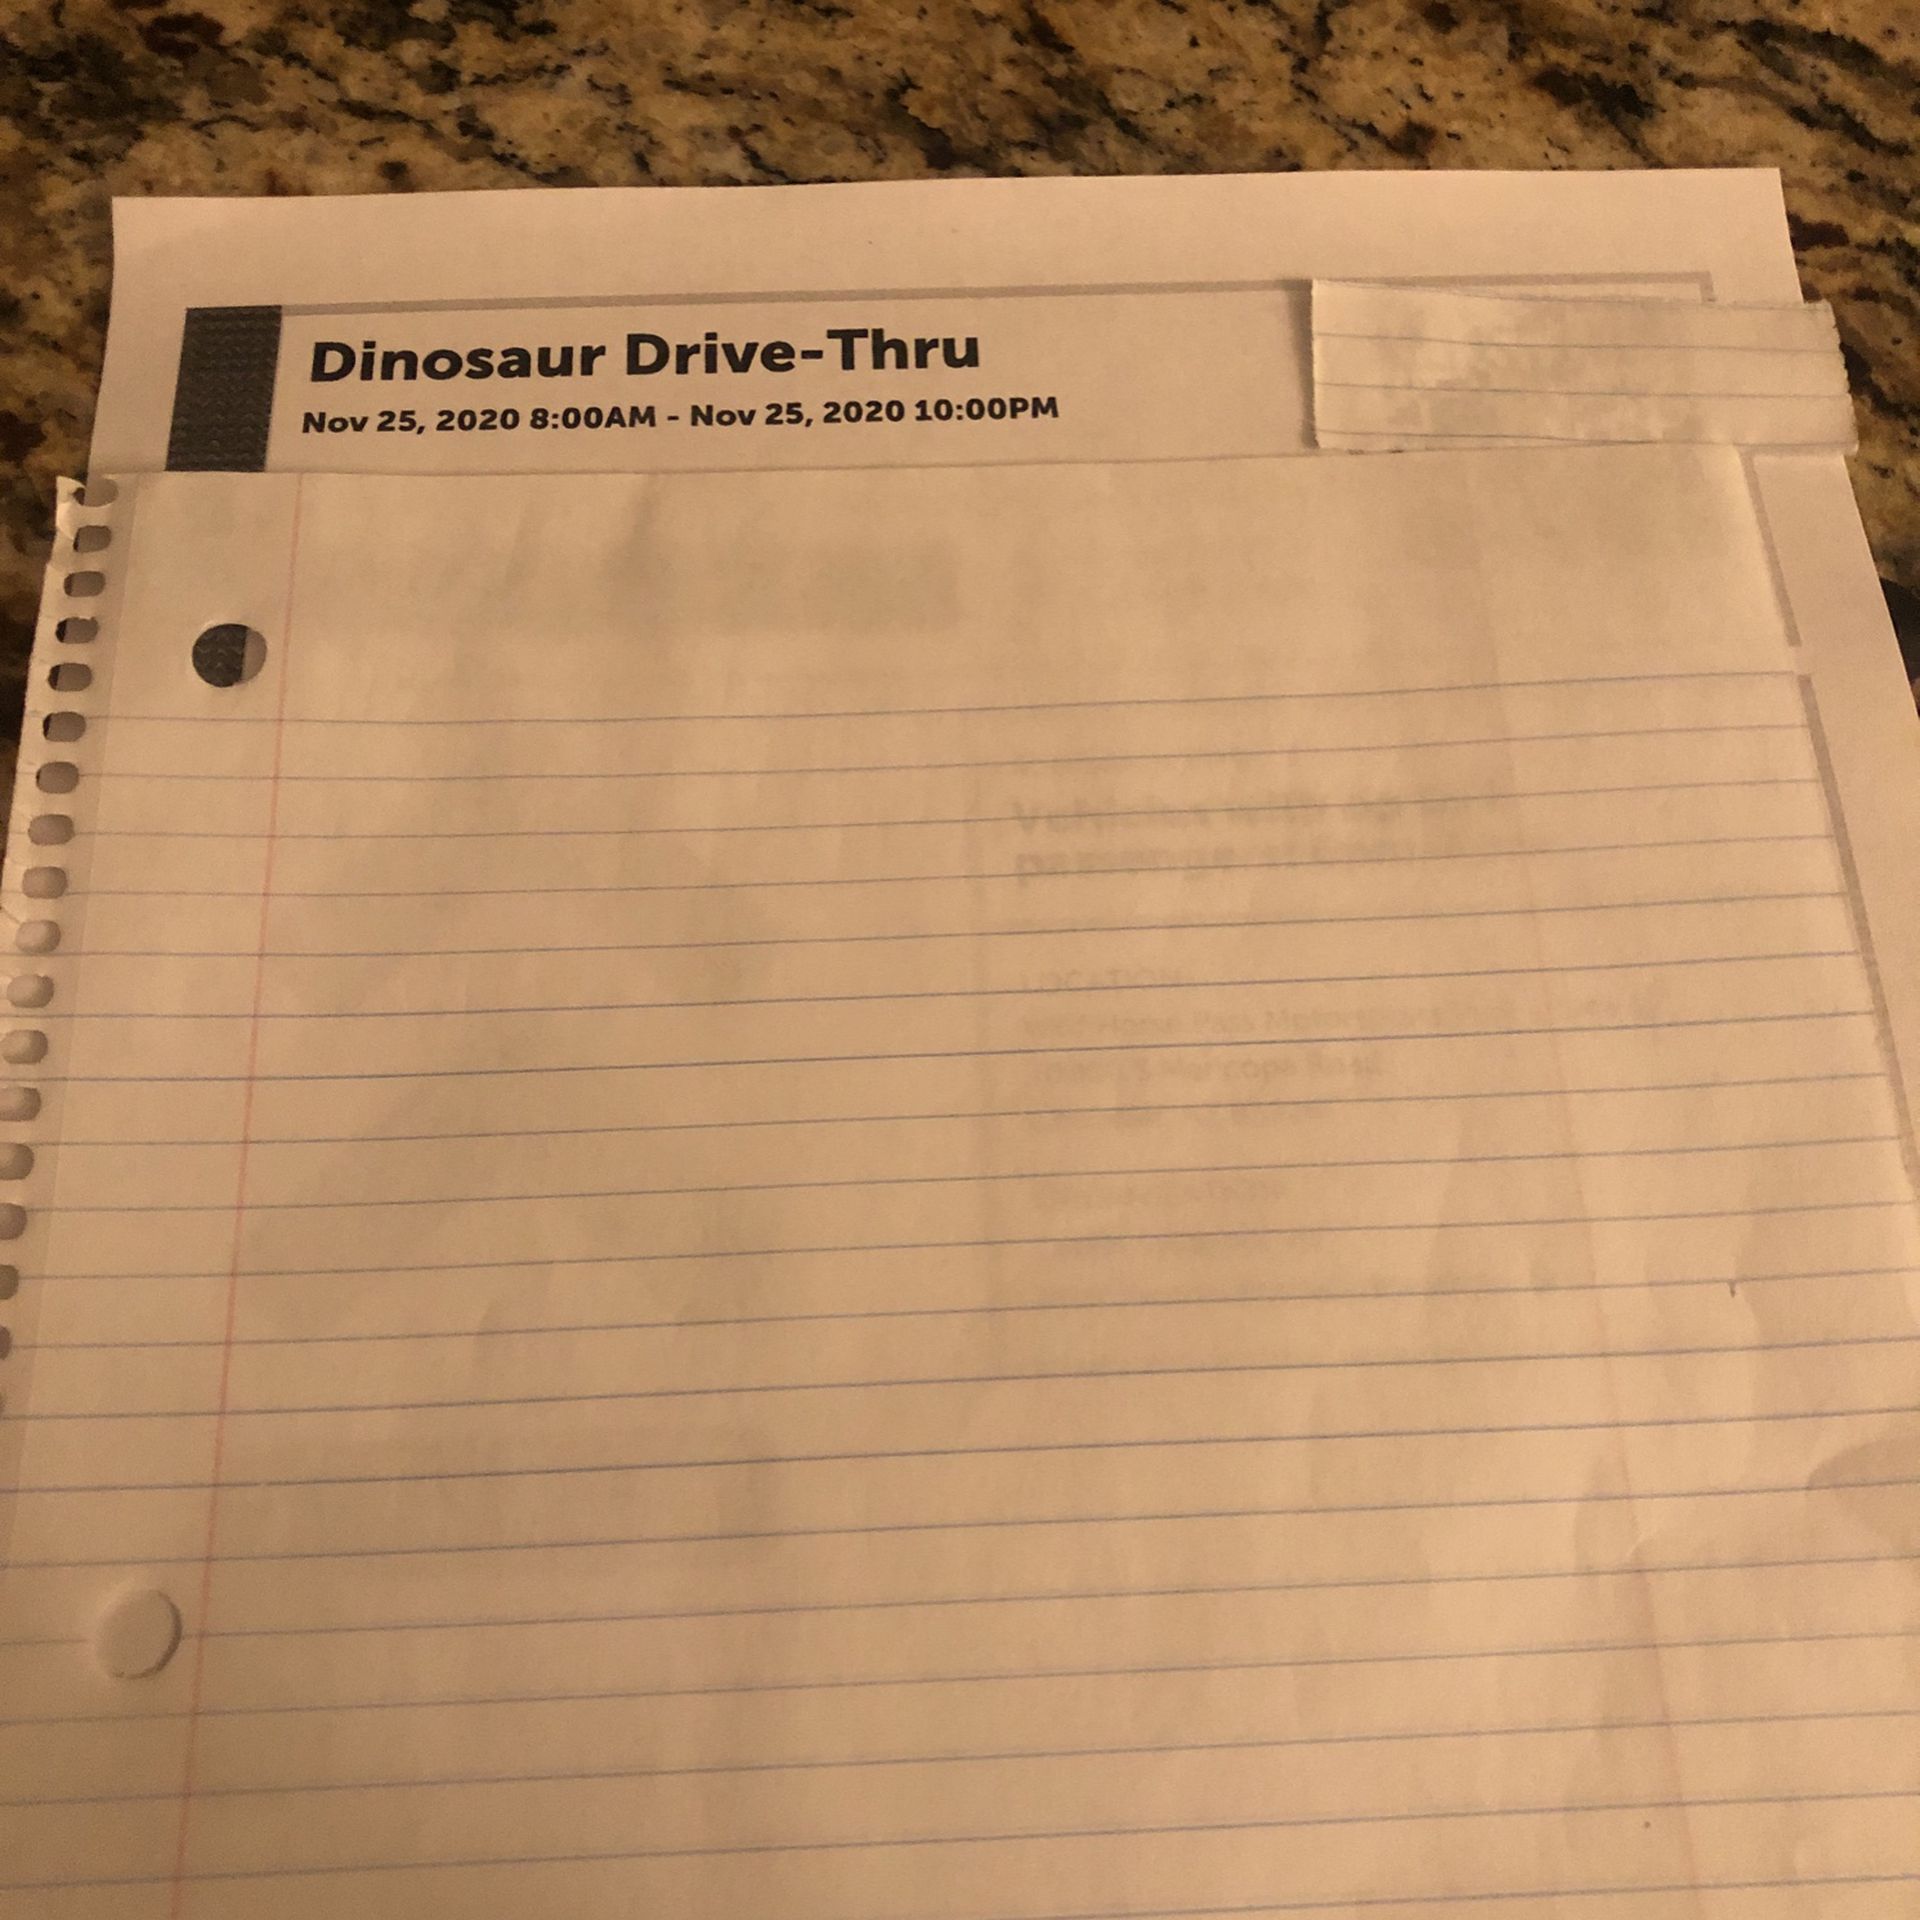 Dinosaur Drive-Thru Nov 25, 2020